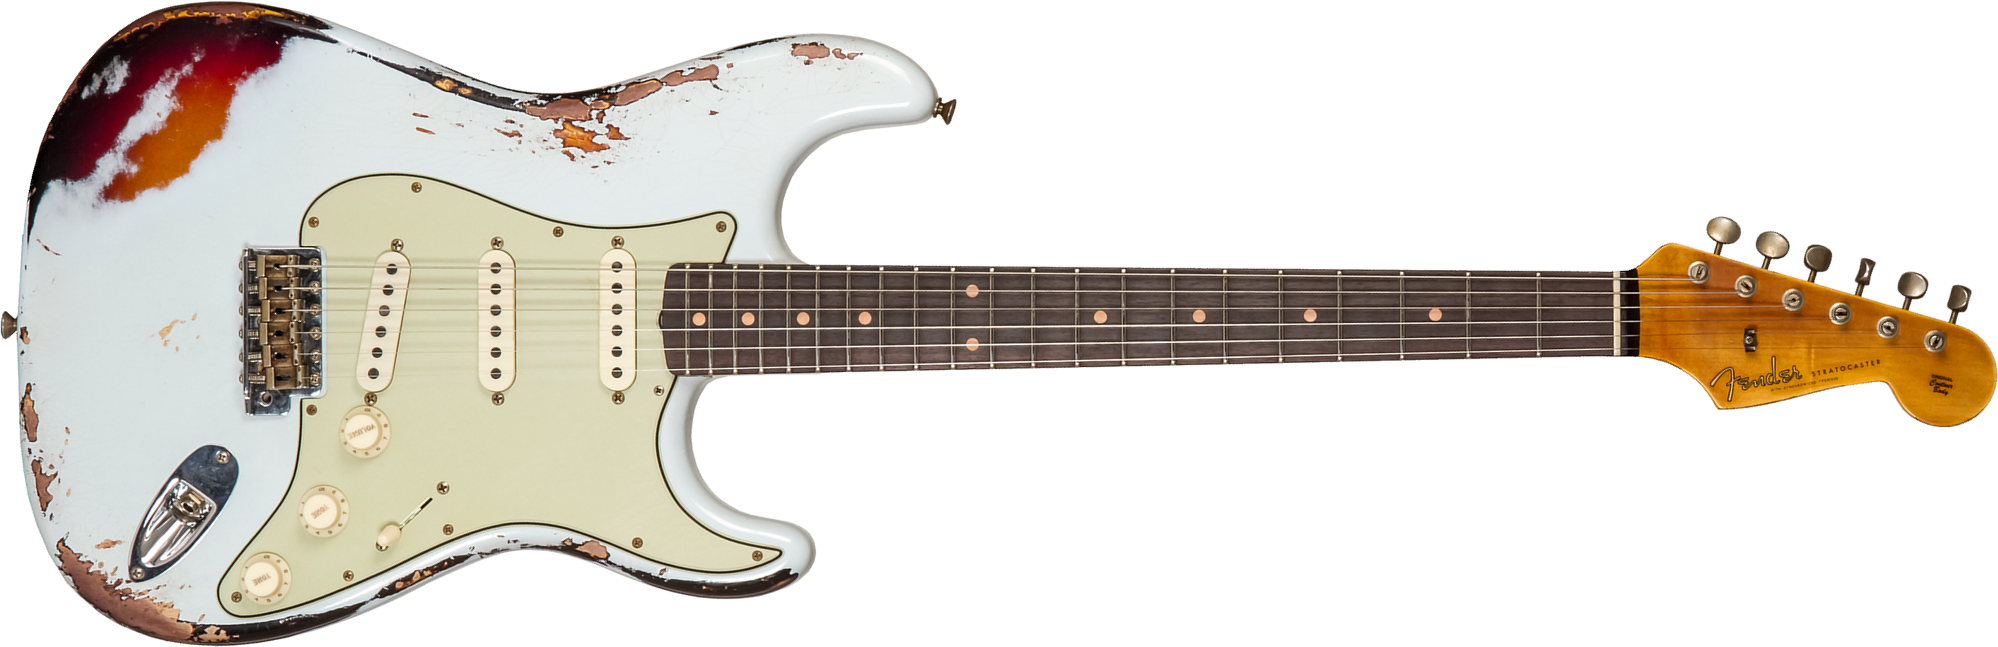 Fender Custom Shop Strat 1961 3s Trem Rw #cz573714 - Heavy Relic Aged Sonic Blue O. 3-color Sunburst - Guitare Électrique Forme Str - Main picture